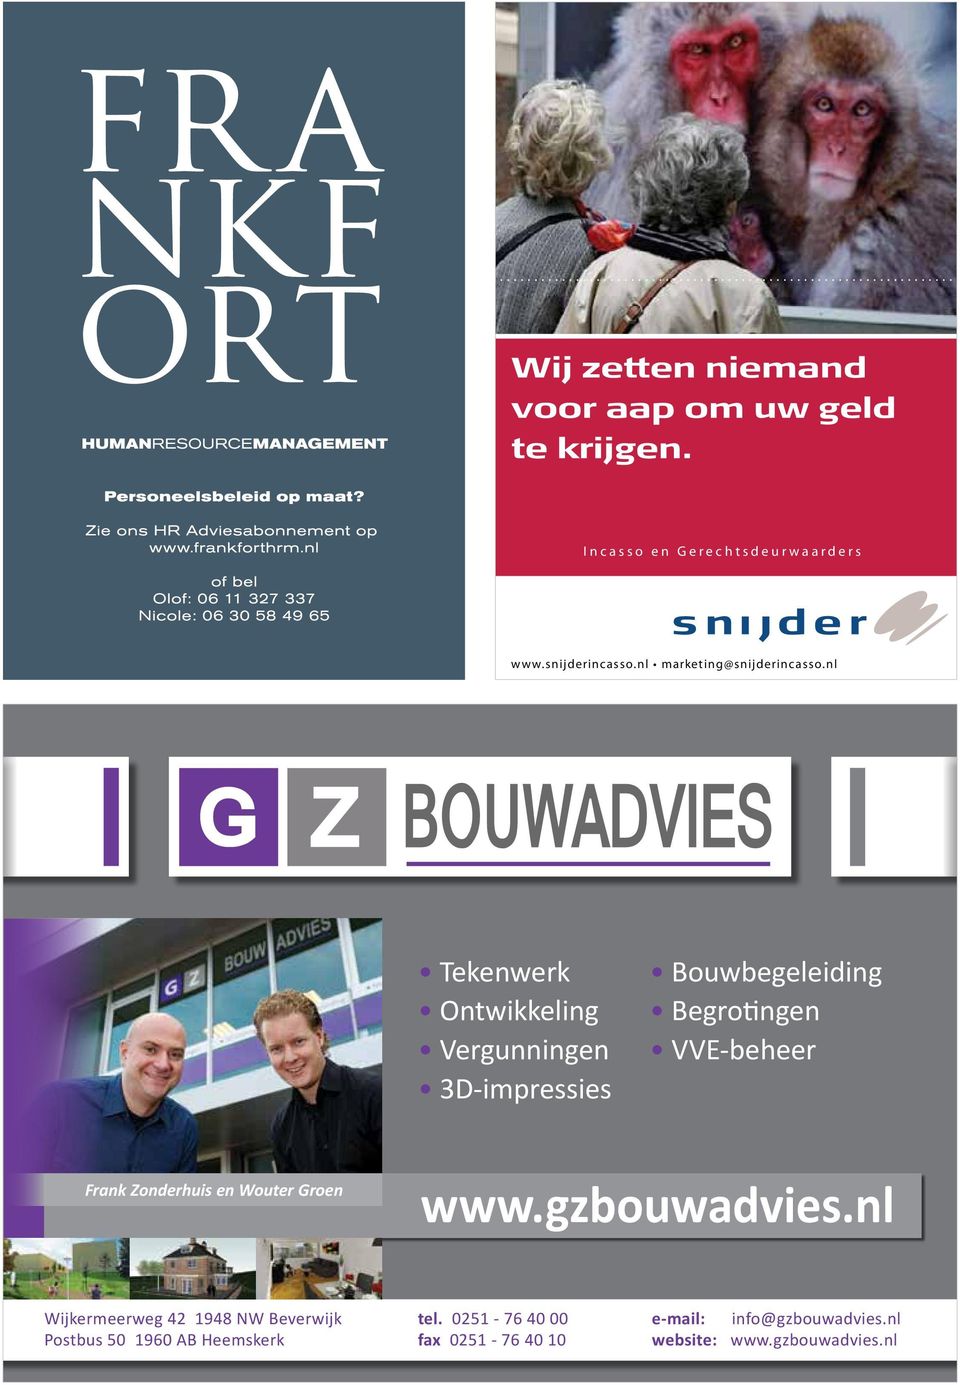 Zonderhuis en Wouter Groen www.gzbouwadvies.